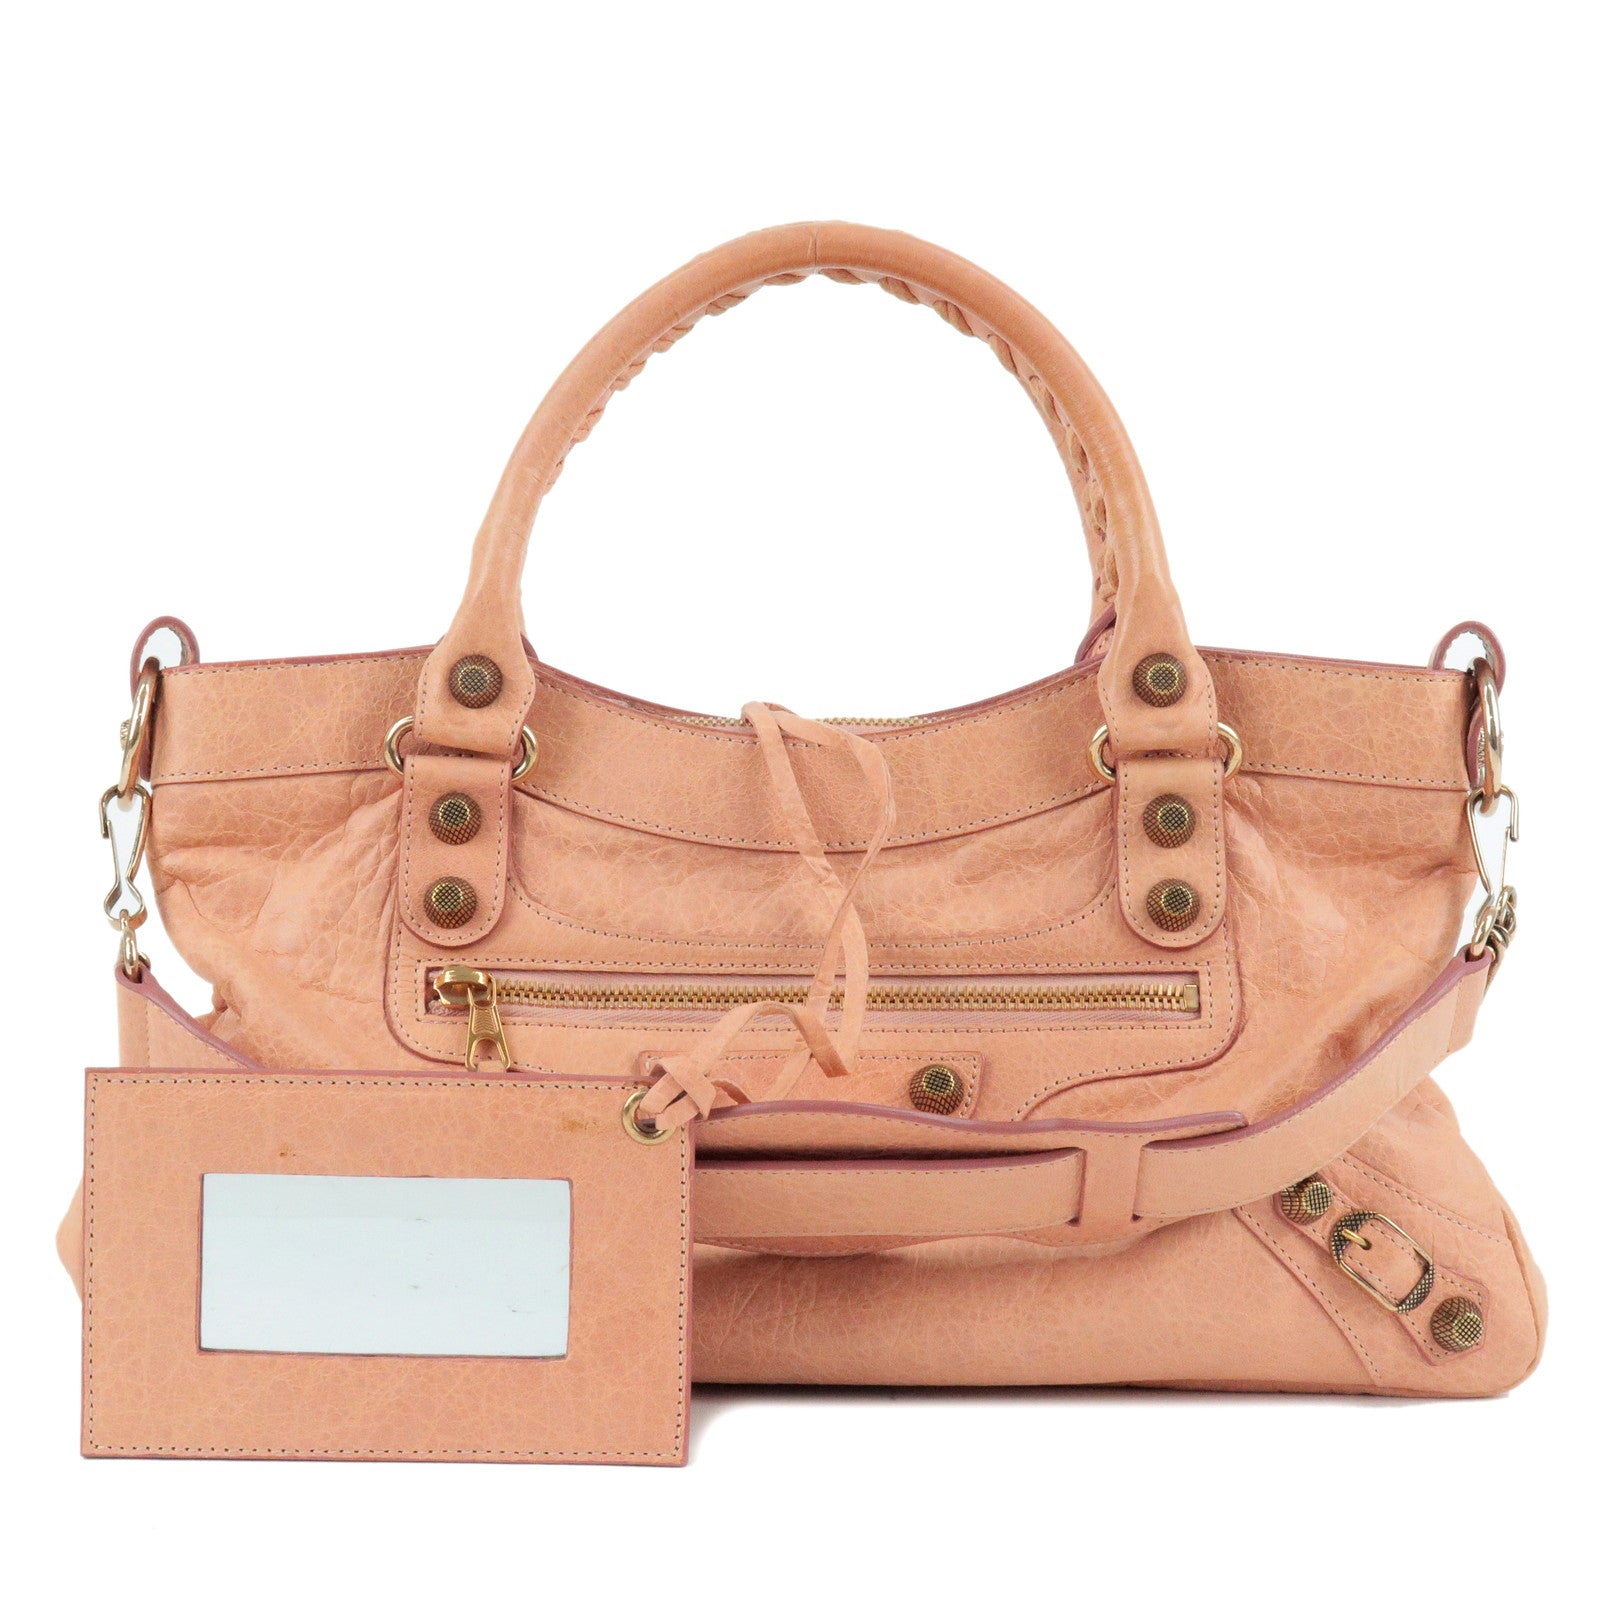 PRADA-Logo-Leather-2Way-Hand-Bag-Shoulder-Bag-Pink-BL0838